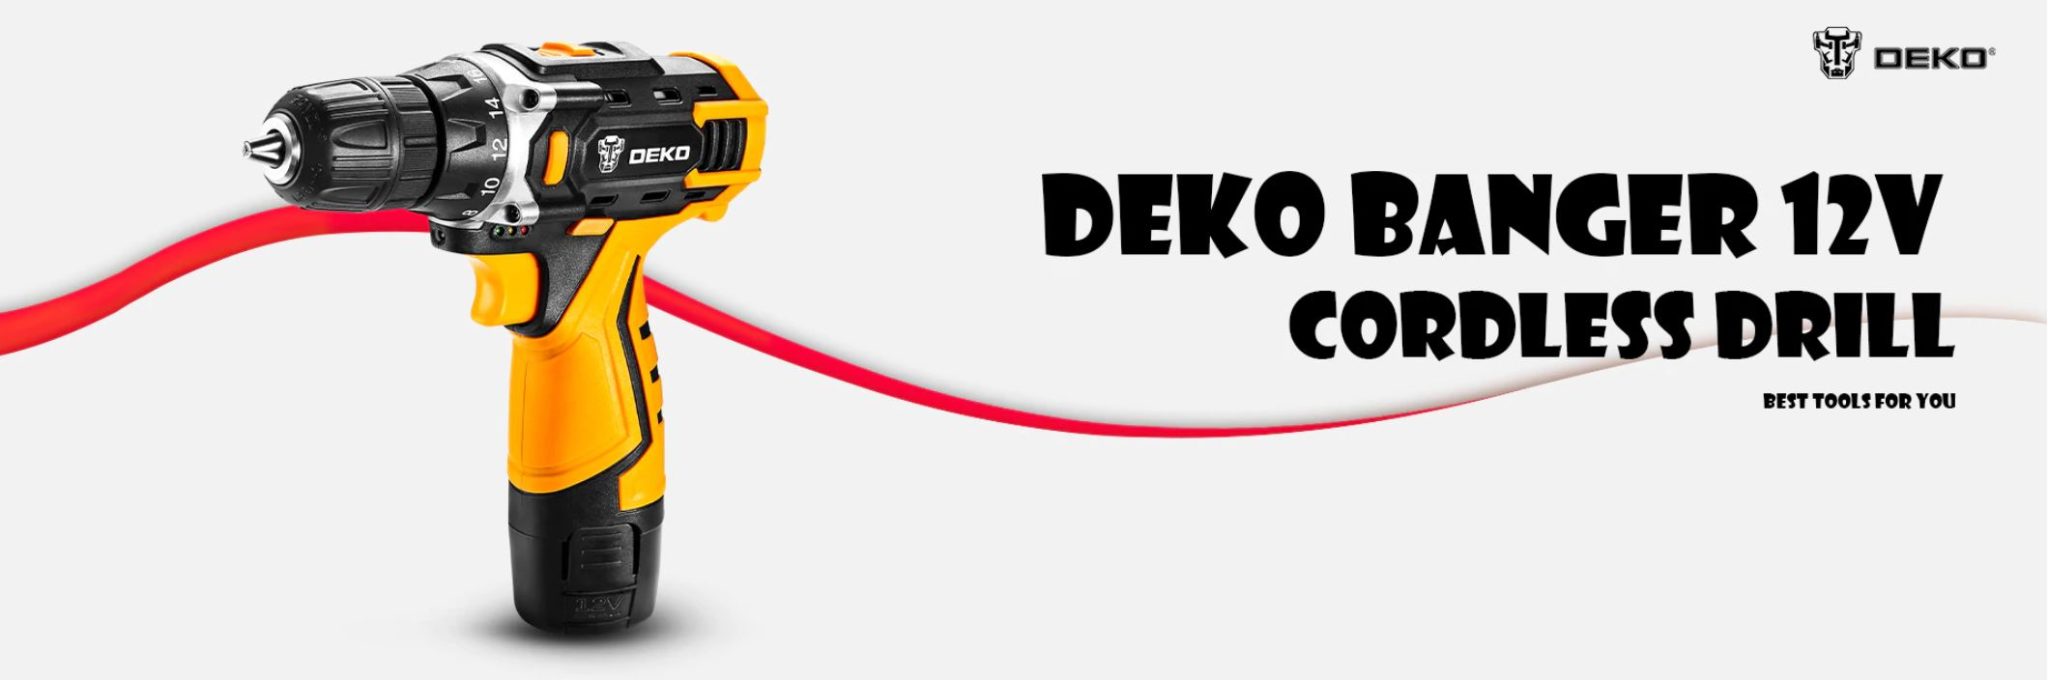 Najlepsze narzędzia z Aliexpress - promocja produktów marki DEKO - wiertarka-wkrętarka DEKO Banger